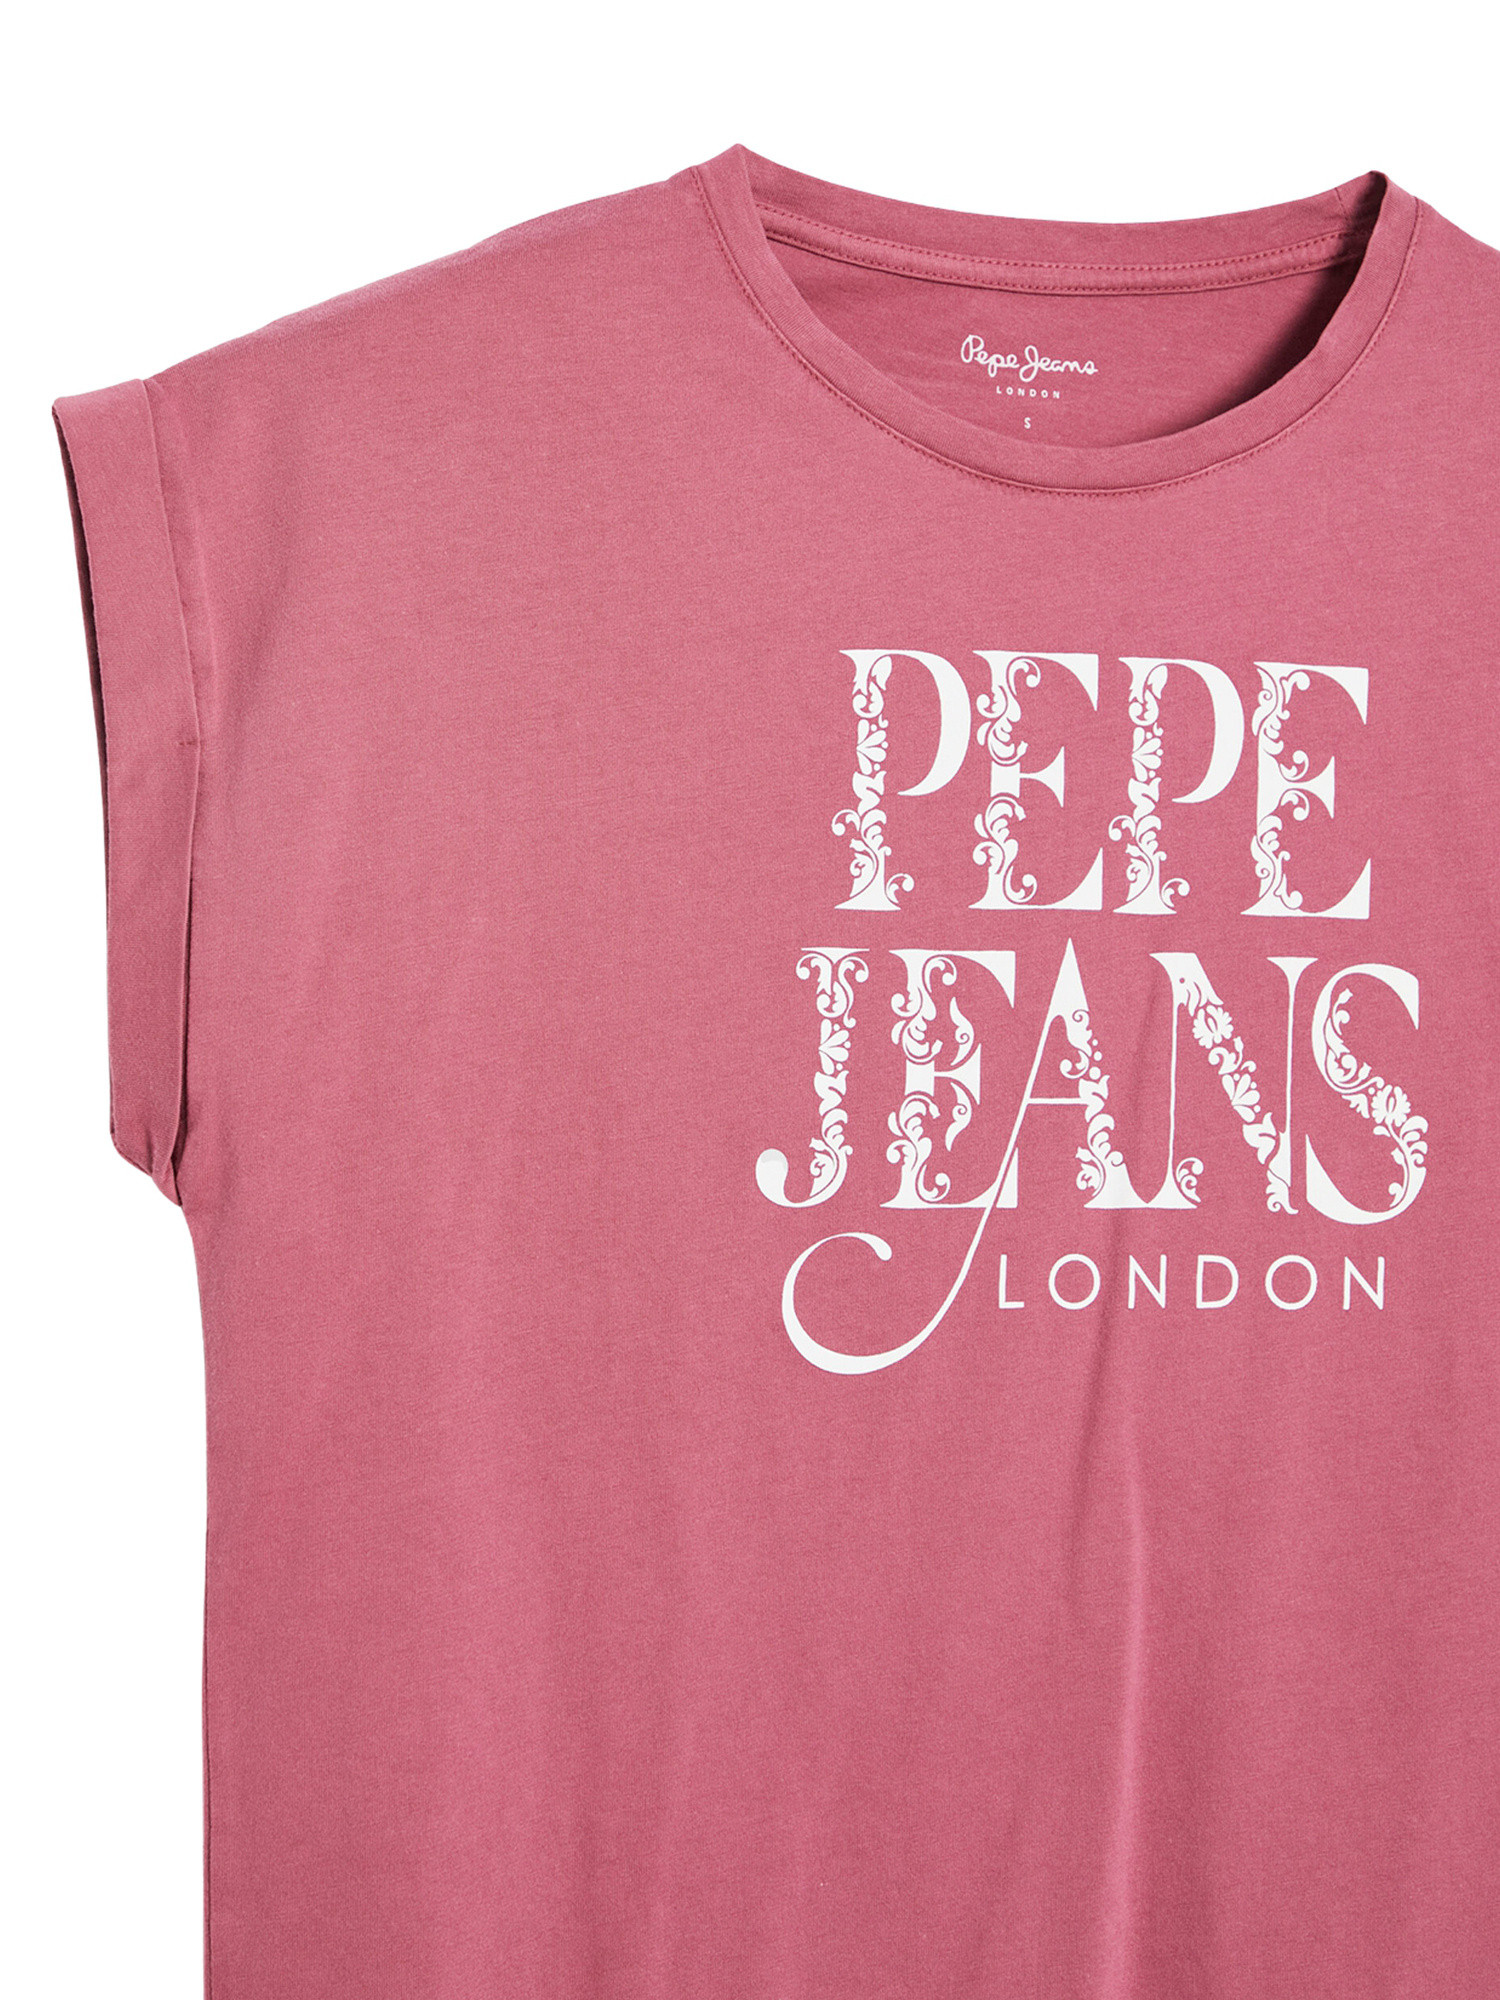 Pepe Jeans - Cotton logo T-shirt, Dark Pink, large image number 2